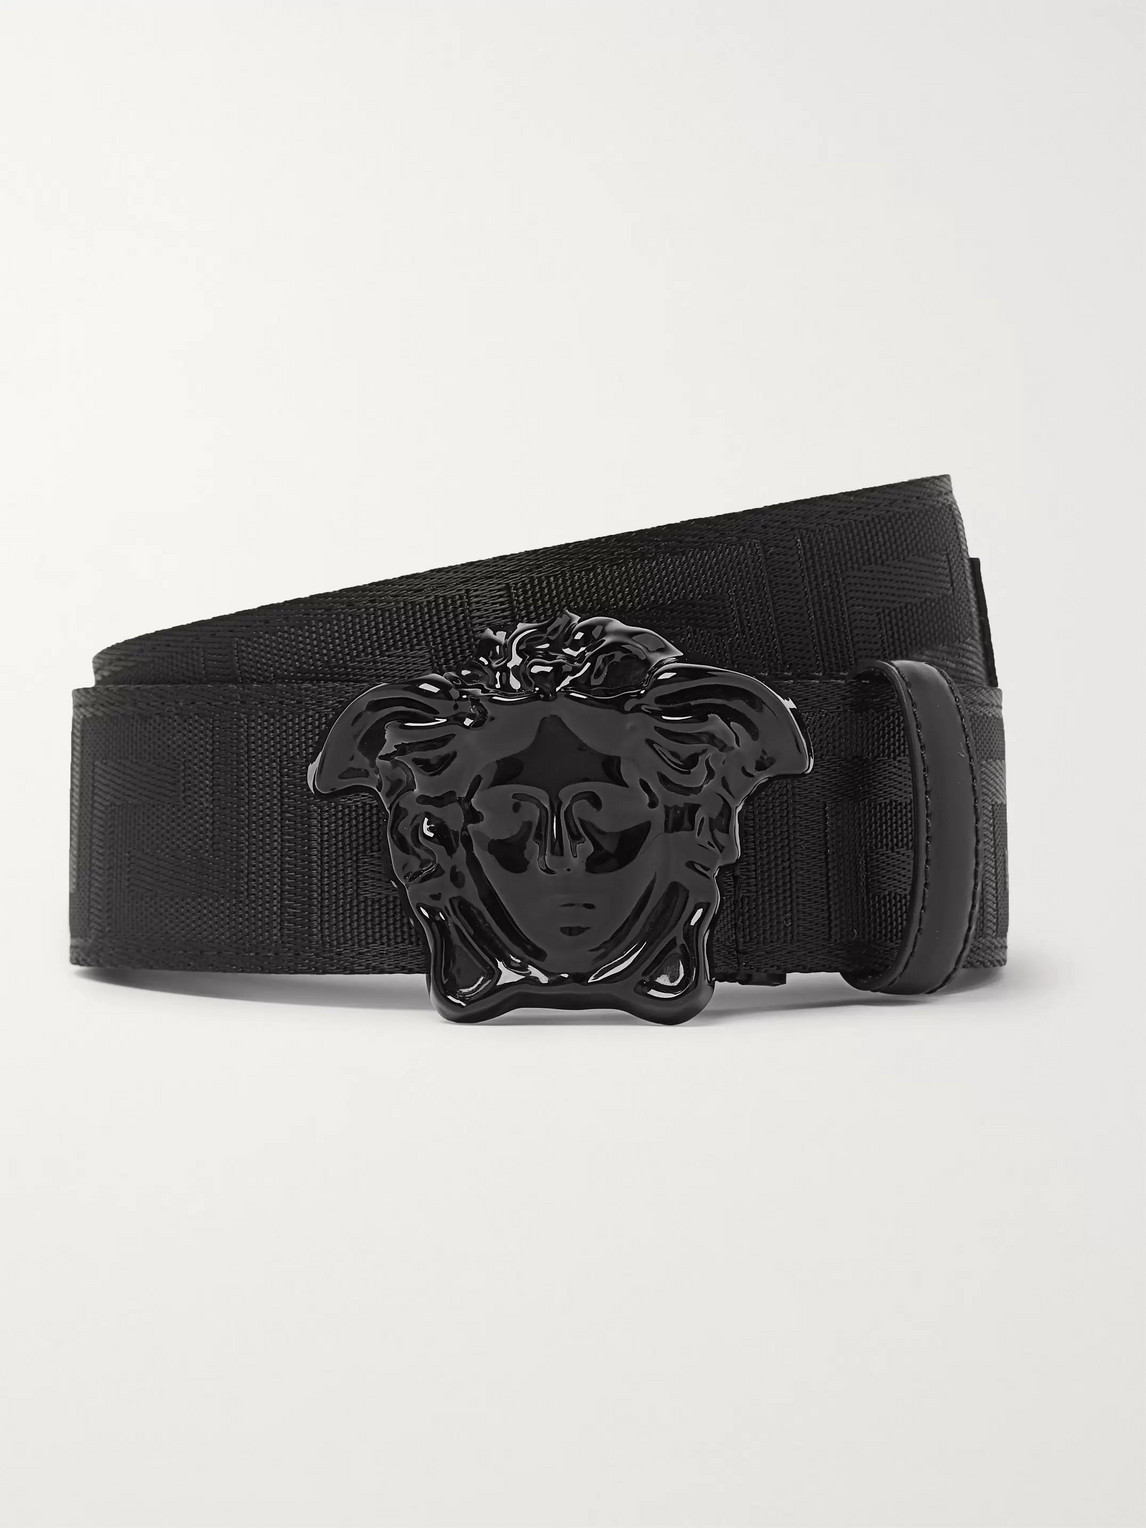 grey versace belt